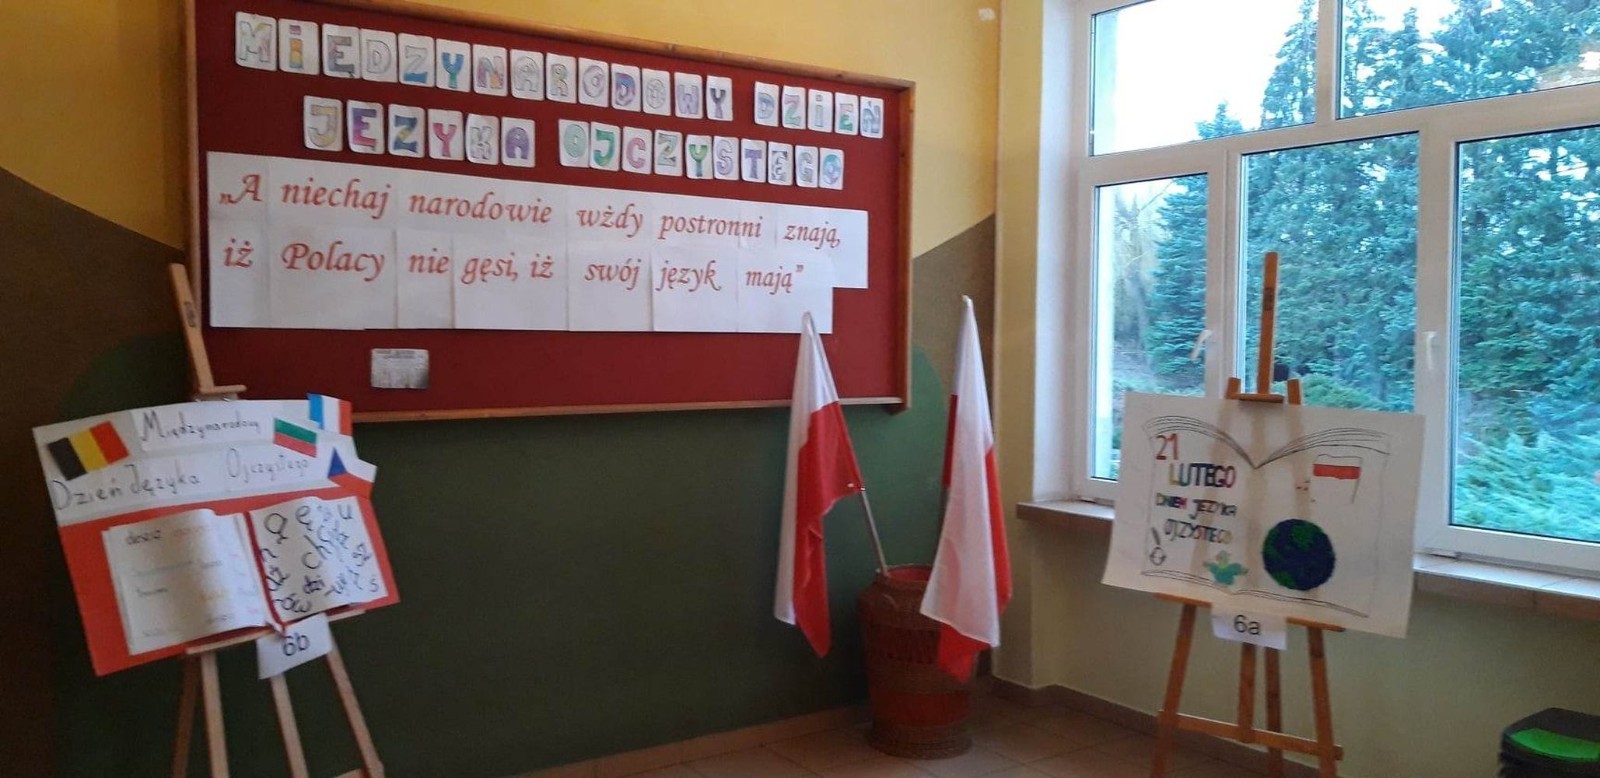 Międzynarodowy Dzień Języka Ojczystego to święto obchodzone 21 lutego. Zostało ustanowione przez UNESCO 17 listopada 1999 r. Przypomina nam o tym, że język to najpotężniejsze narzędzie ochrony i rozwoju wspólnego dziedzictwa kulturowego ludzkości.
W naszej szkole uczniowie klas IV- VIII obchodzili ten dzień w sposób wyjątkowy. Starsze klasy na języku polskim utrwalały wiadomości o lekturach obowiązkowych, wykonując plakaty. Młodsi uczniowie rozwiązywali zadania, quizy sprawdzające ich wiedzę o poprawności językowej, znajomości związków frazeologicznych oraz utrwalali zasady ortograficzne. Na zajęciach plastycznych każda klasa wykonała plakat tematyczny. Natomiast na religii dzieci utrwalały wiedzę o przypowieściach biblijnych, wykonując karty pracy przygotowane przez panią katechetkę.
Obchody Międzynarodowy Dnia Języka Ojczystego upłynęły w bardzo miłej i radosnej atmosferze. Mam nadzieję, że uczniowie choć w niewielkim stopniu uświadomili sobie, że język polski jest naszym skarbem oraz symbolem narodowym i zapamiętają, że należy dbać o niego codziennie, a nie tylko Dniu Jezyka Ojczystego.